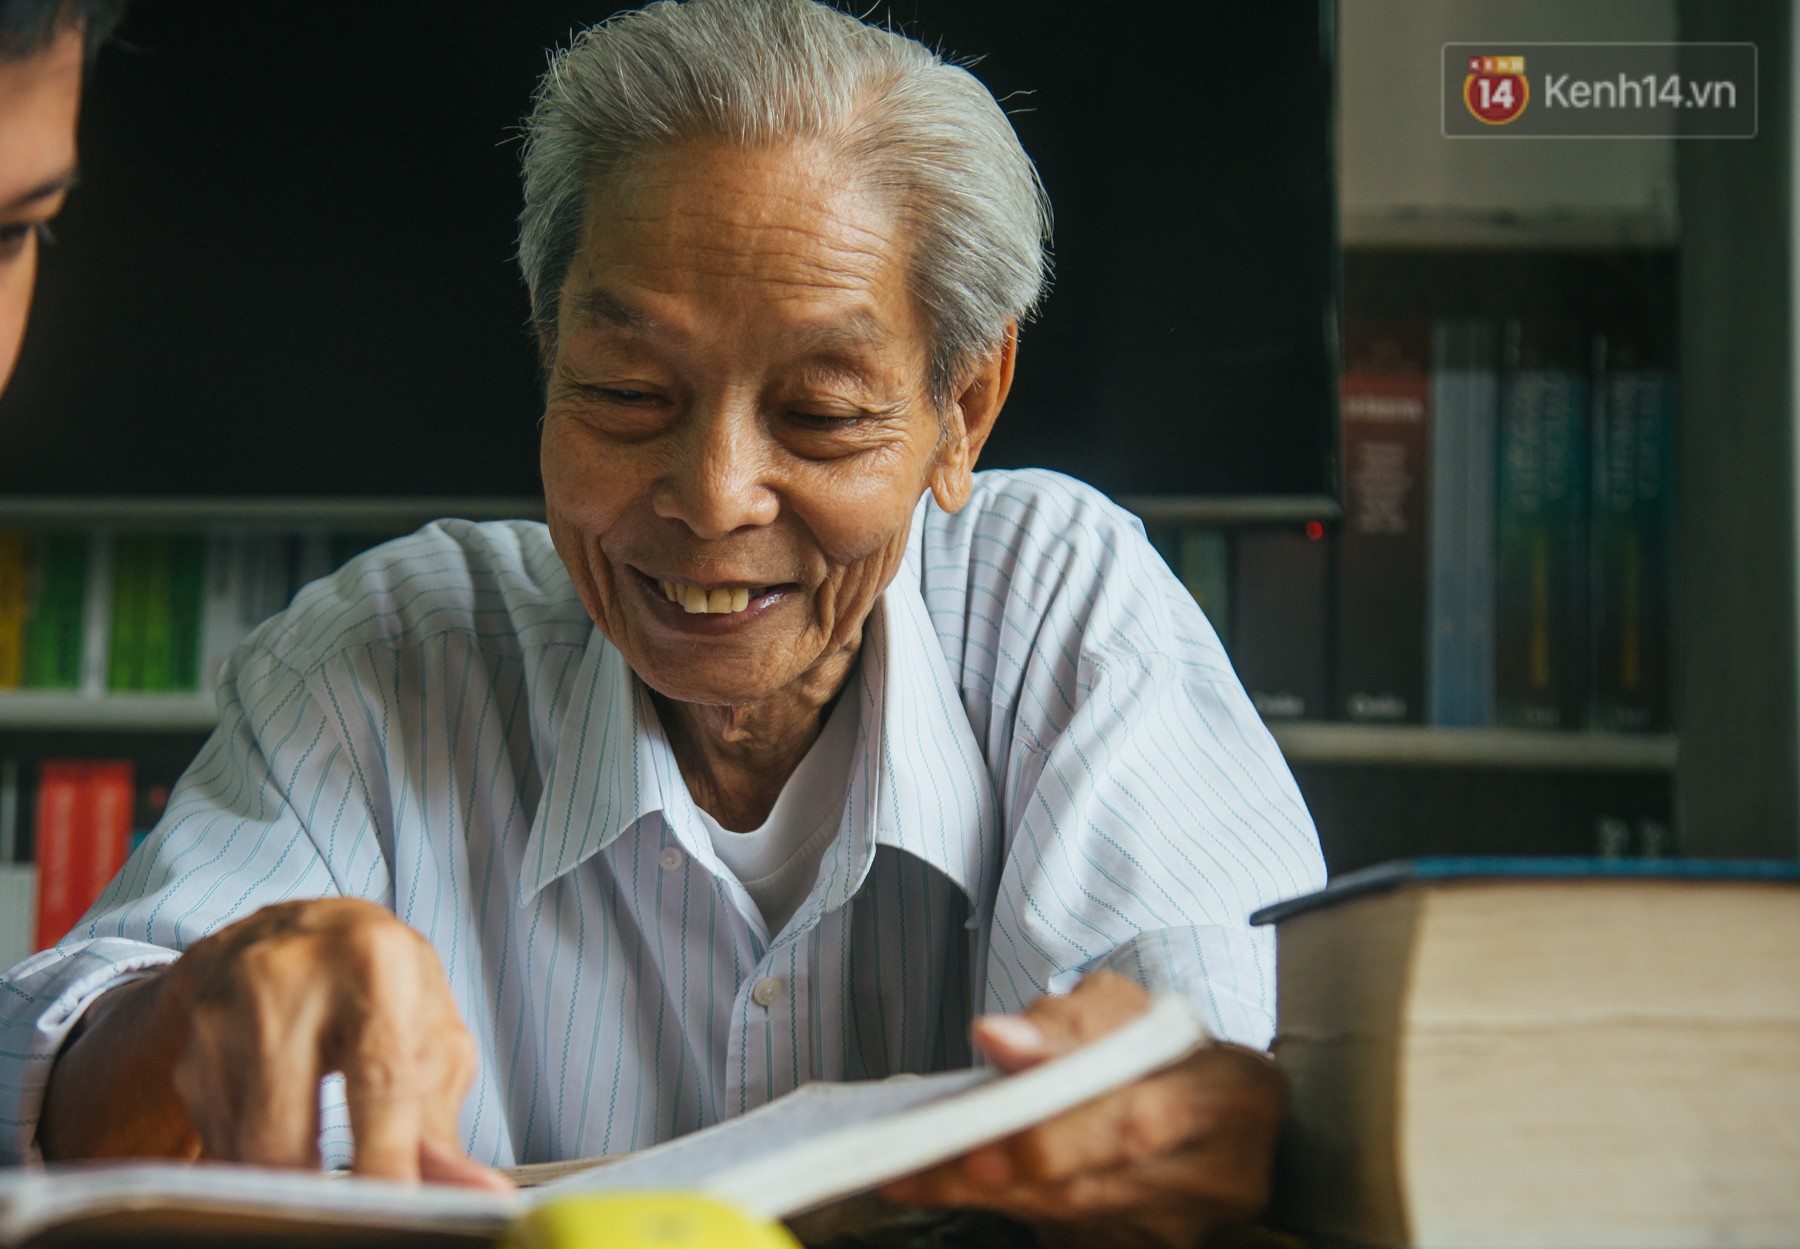 Cụ ông 77 tuổi hàng ngày lên thư viện học ngoại ngữ, người cha 52 tuổi cặm cụi nghe Tiếng Anh: Những câu chuyện truyền cảm hứng học hành bạn nên đọc - Ảnh 2.